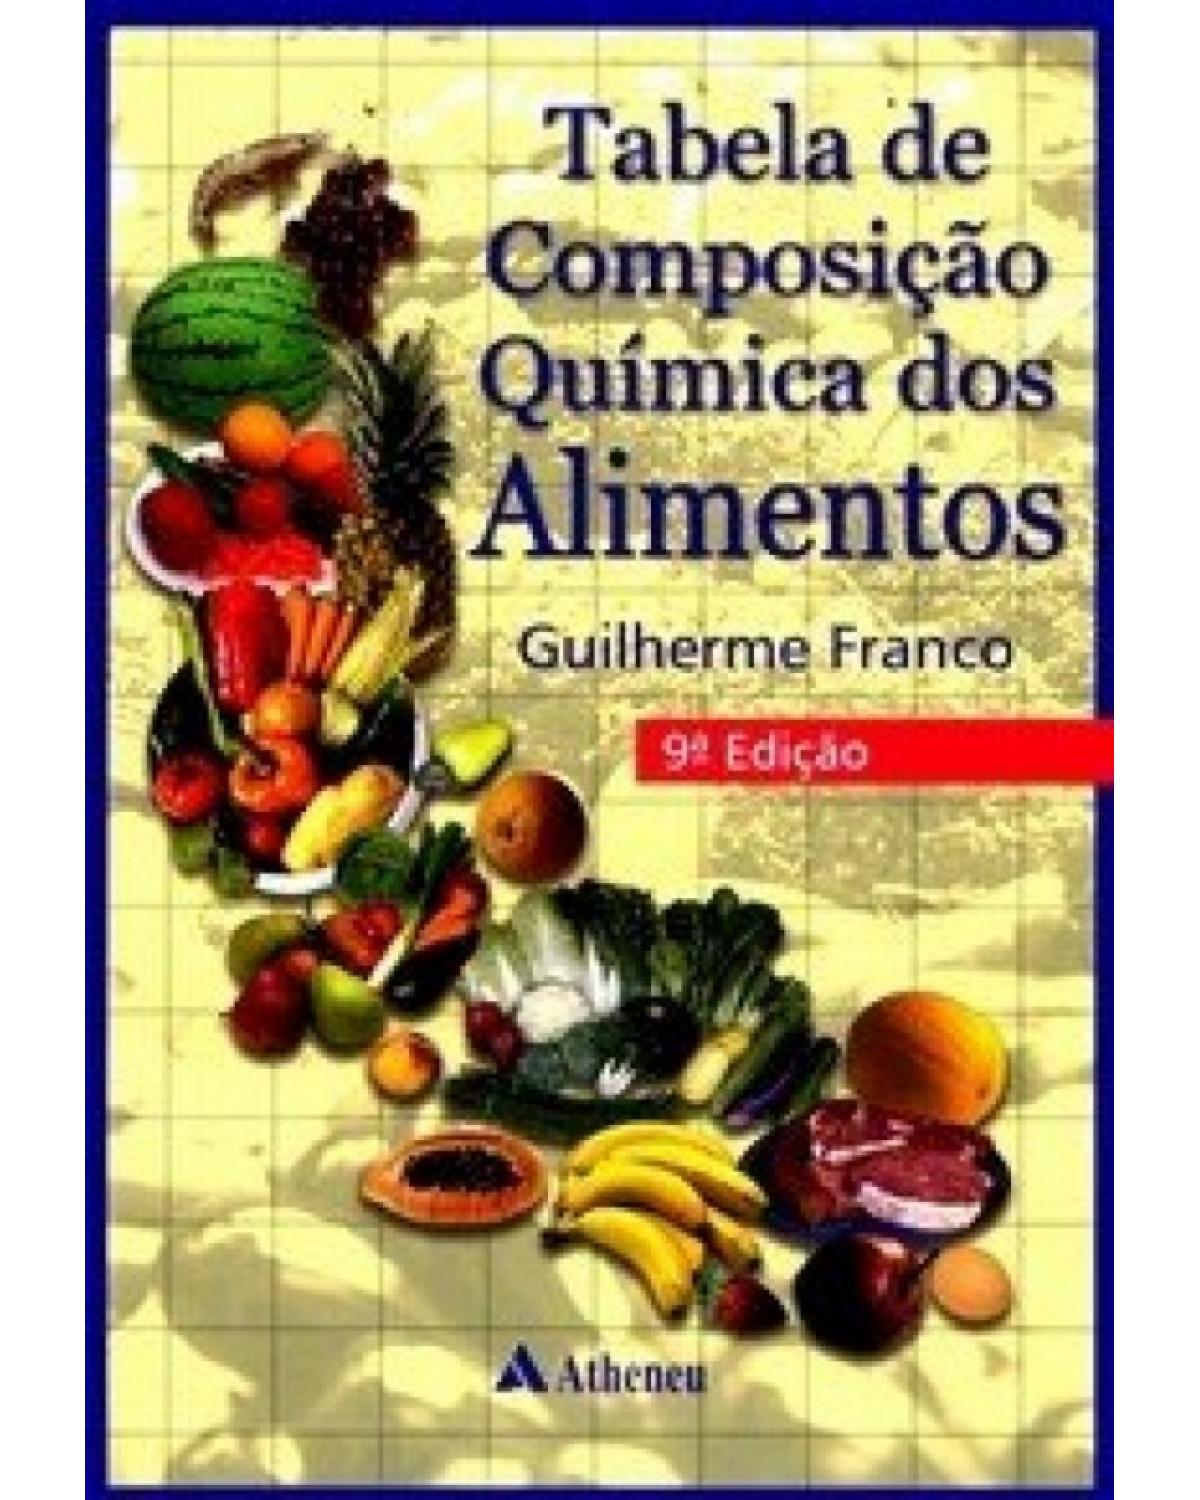 Tabela de composição química dos alimentos - 9ª Edição | 2008